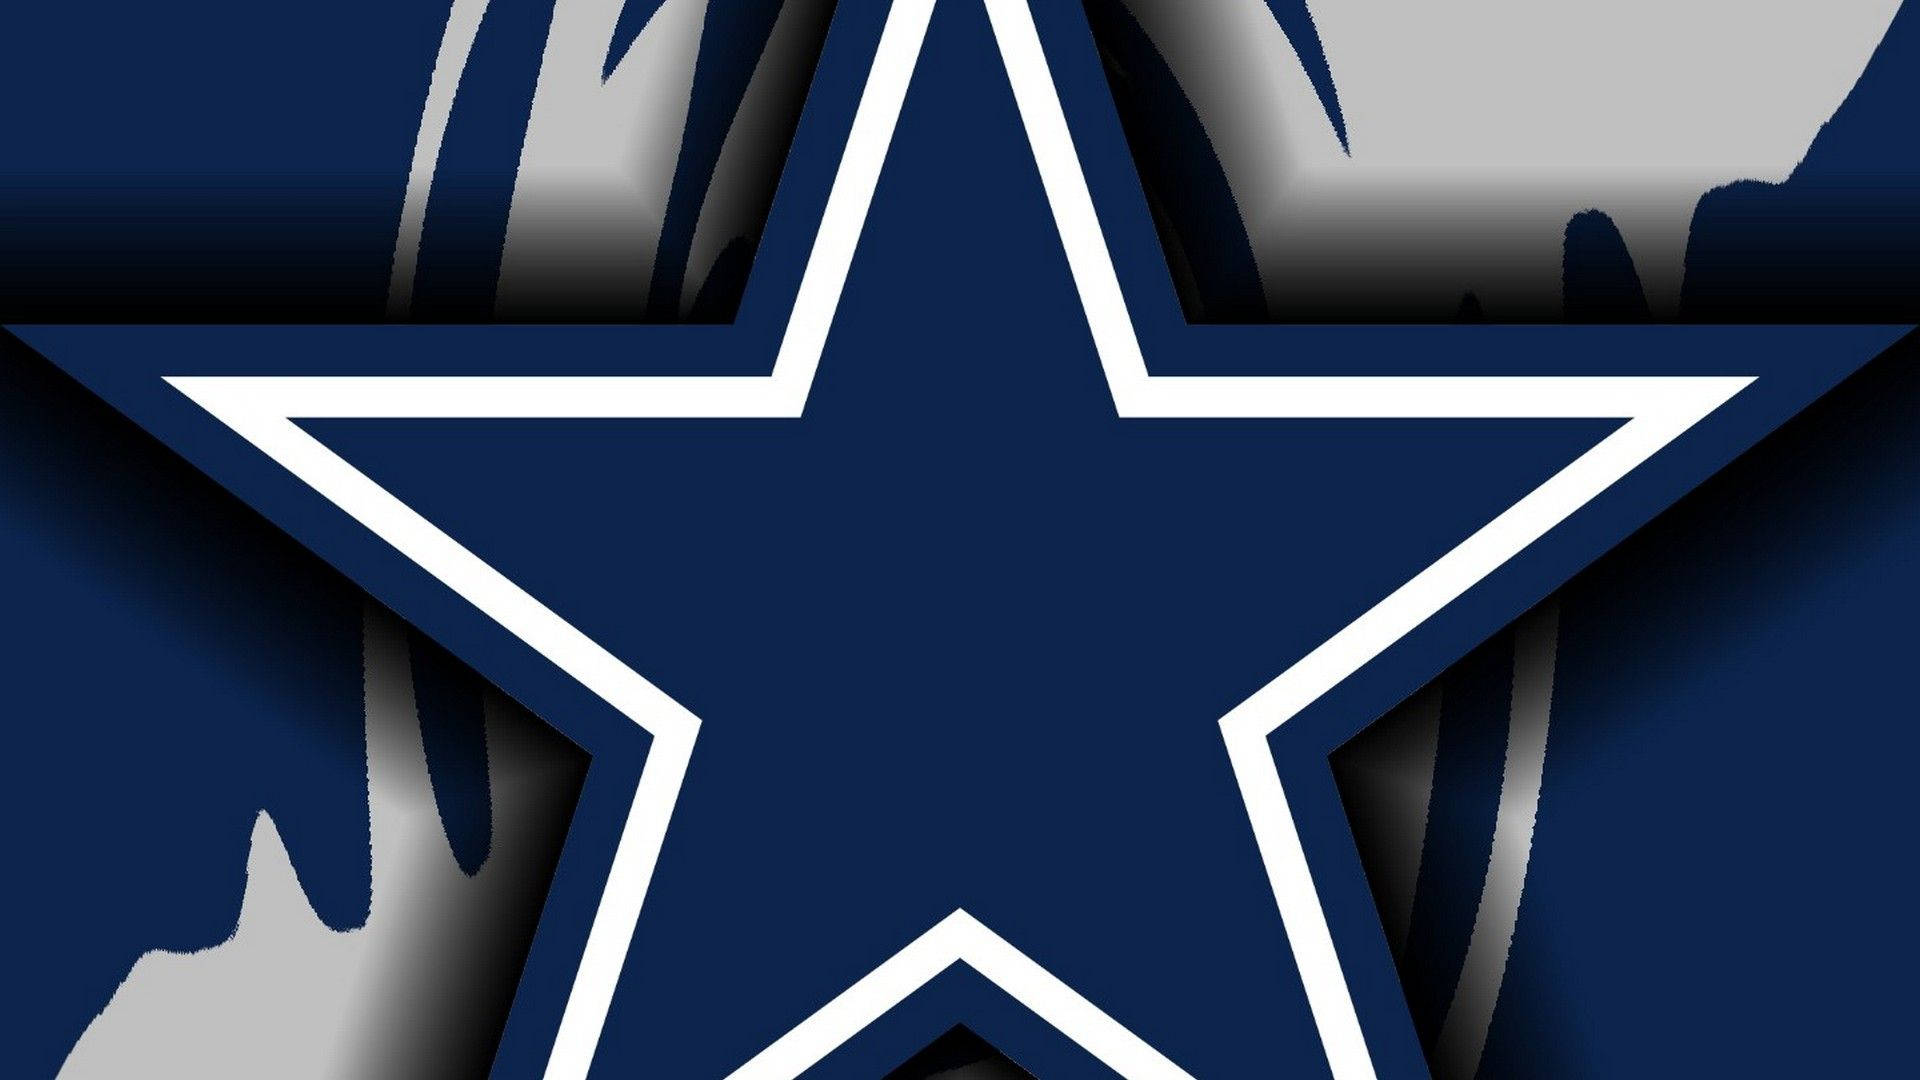 Dallas Cowboys Logo With Streaks